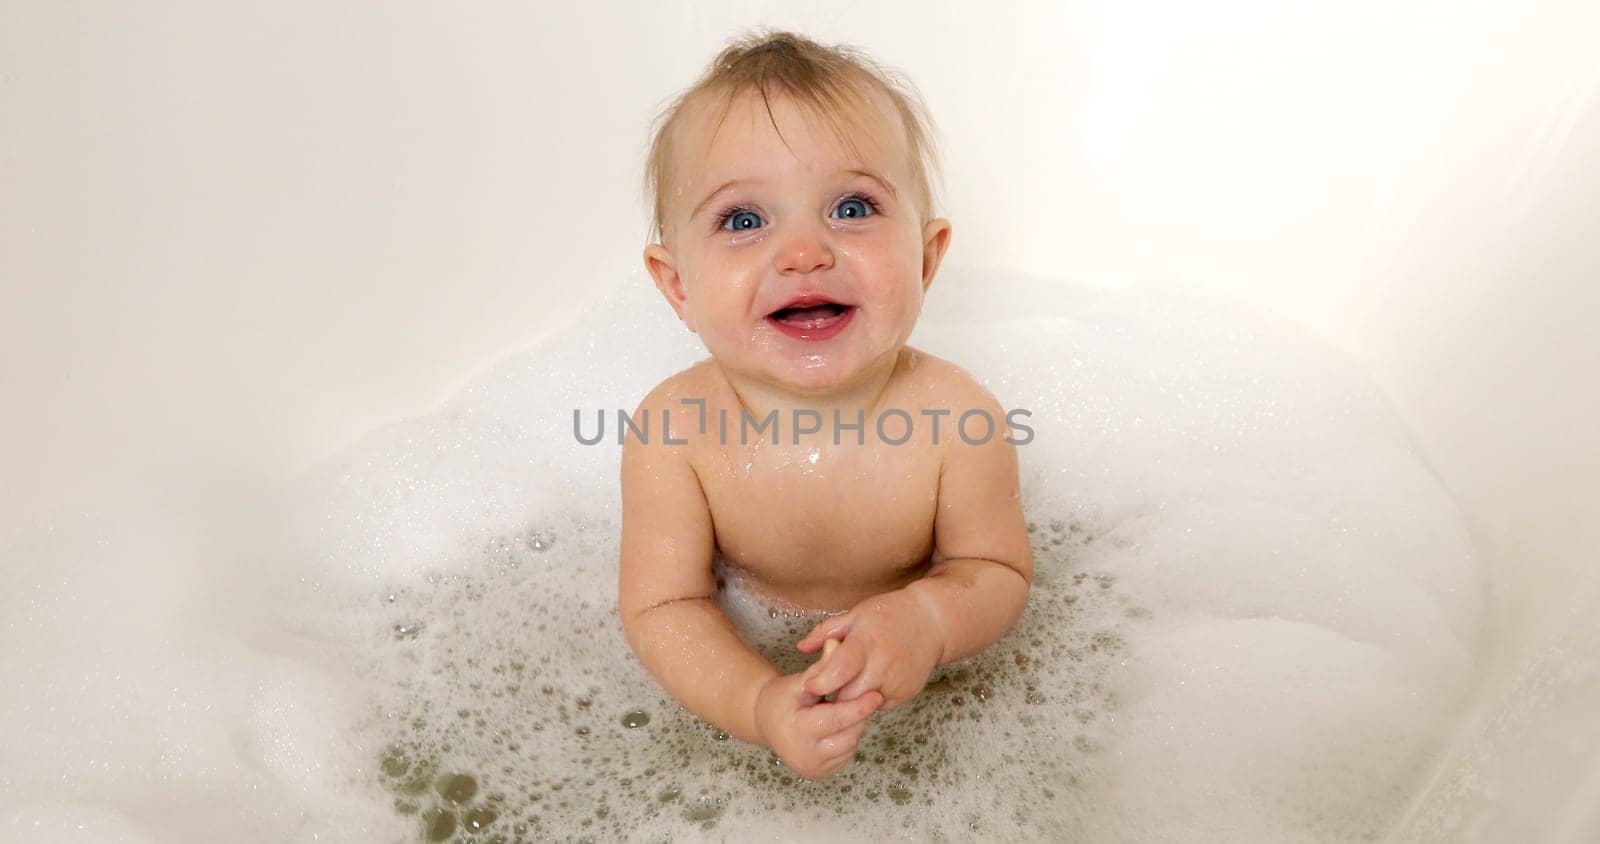 happy baby boy laughing in bath tub by Demkat